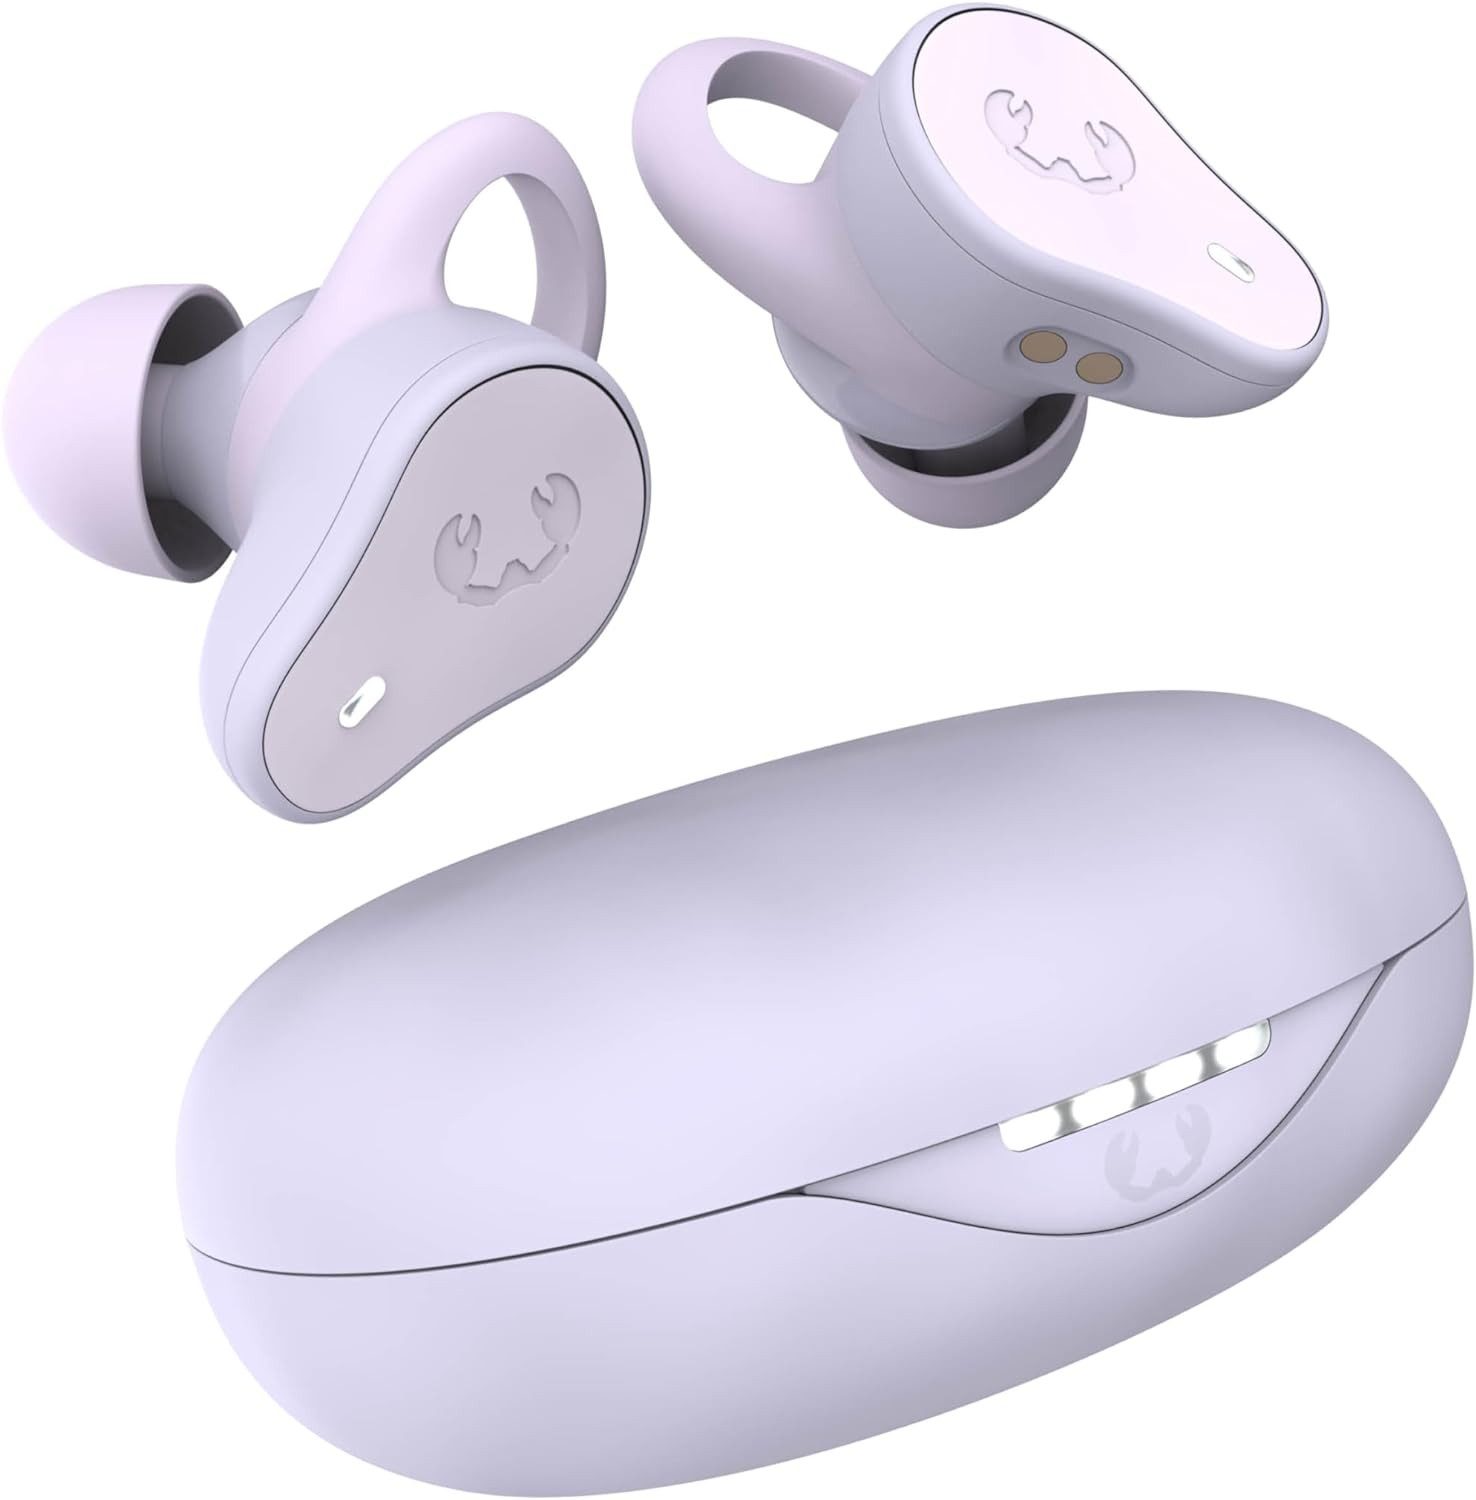 Fresh 'n Rebel Immer bereiter Sprachassistent In-Ear-Kopfhörer (IPX4 spritzwassergeschützt und trotzen Schweiß sowie leichtem Regen., Intuitive Steuerung bedienungsfreundlichen Tasten Lautstärkeregelung)